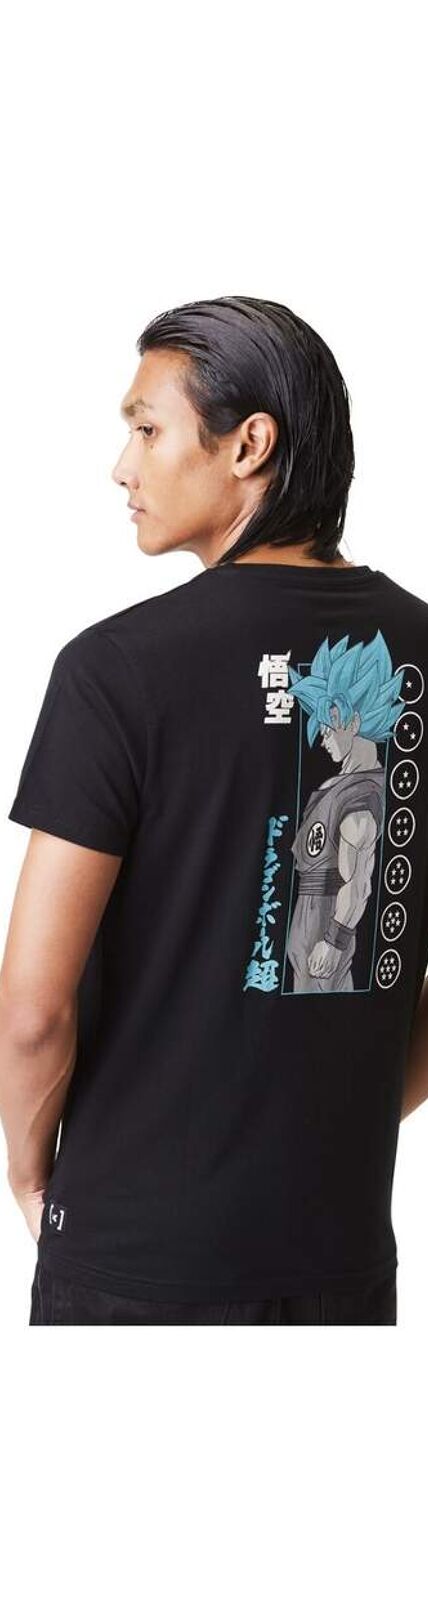 T-Shirt homme Dragon Ball Super Goku Capslab